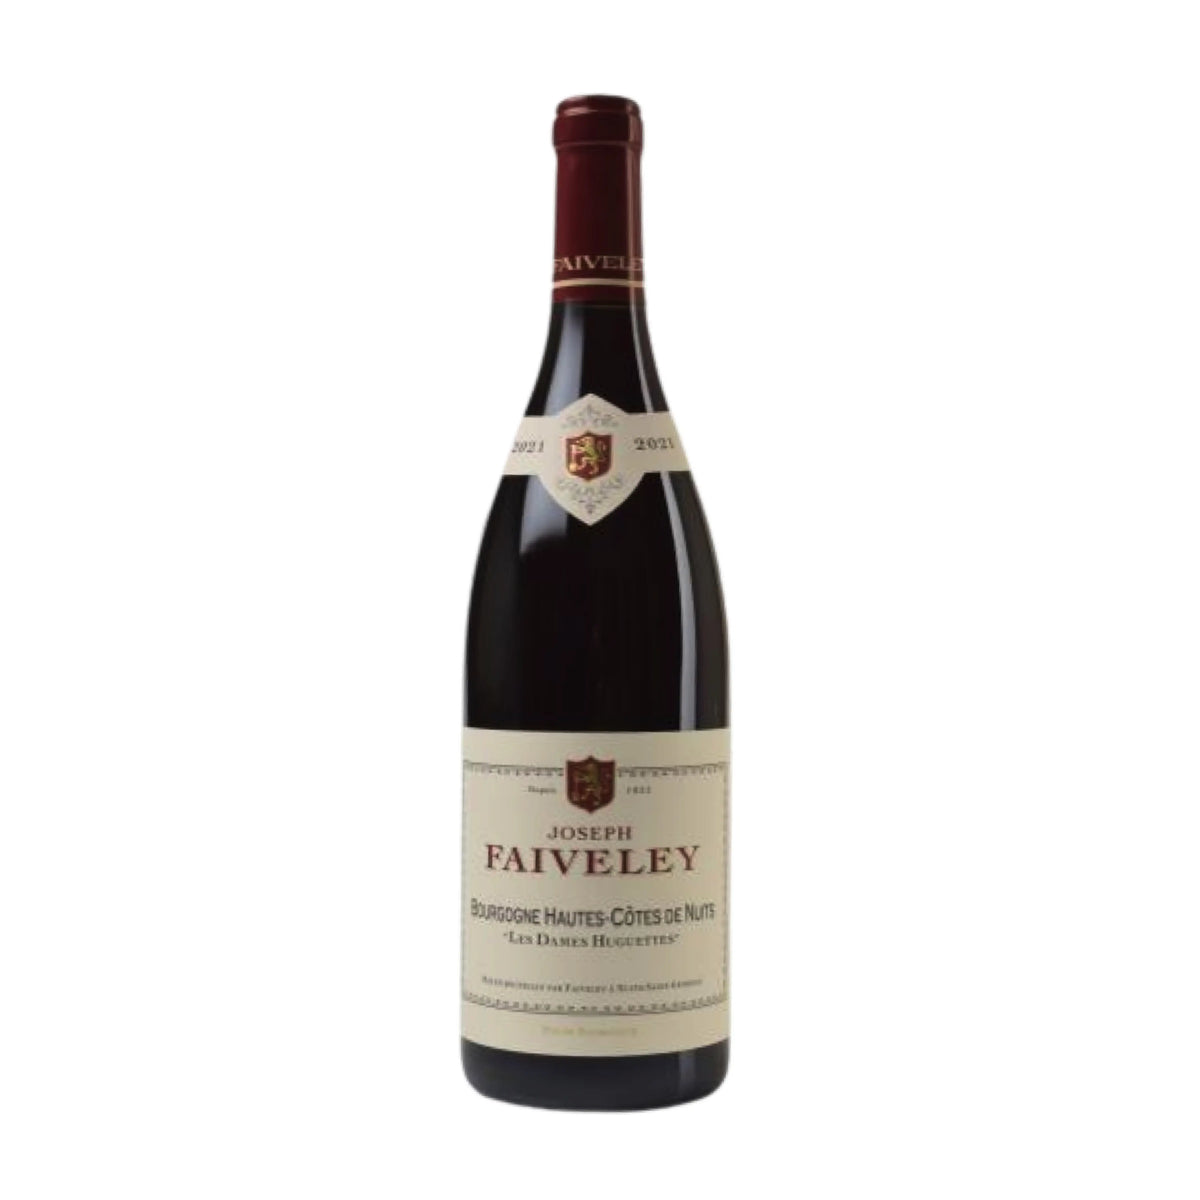 Domaine Faiveley-Rotwein-Pinot Noir-2021 Bourgogne Côtes de Nuits Les Dames Huguettes-WINECOM